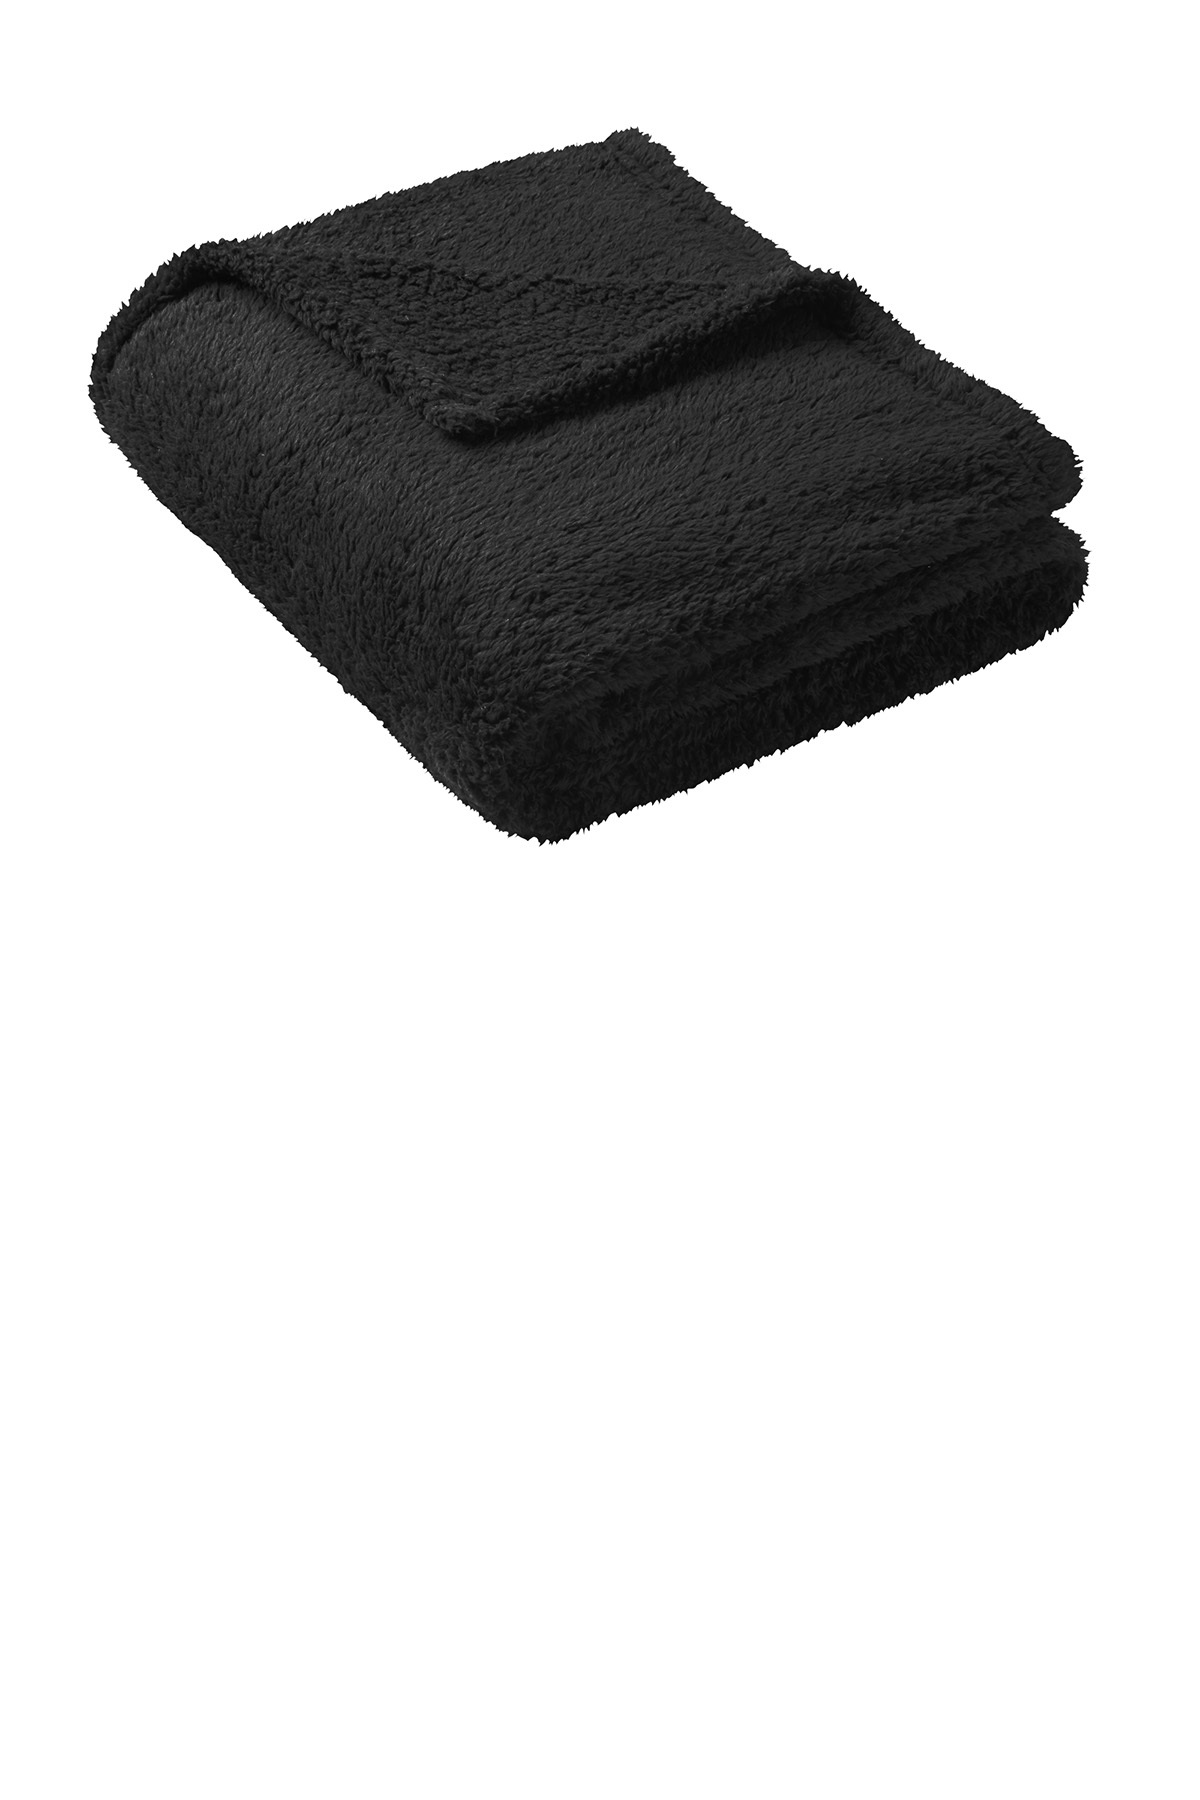 Port Authority® - BP36 - Cozy Blanket